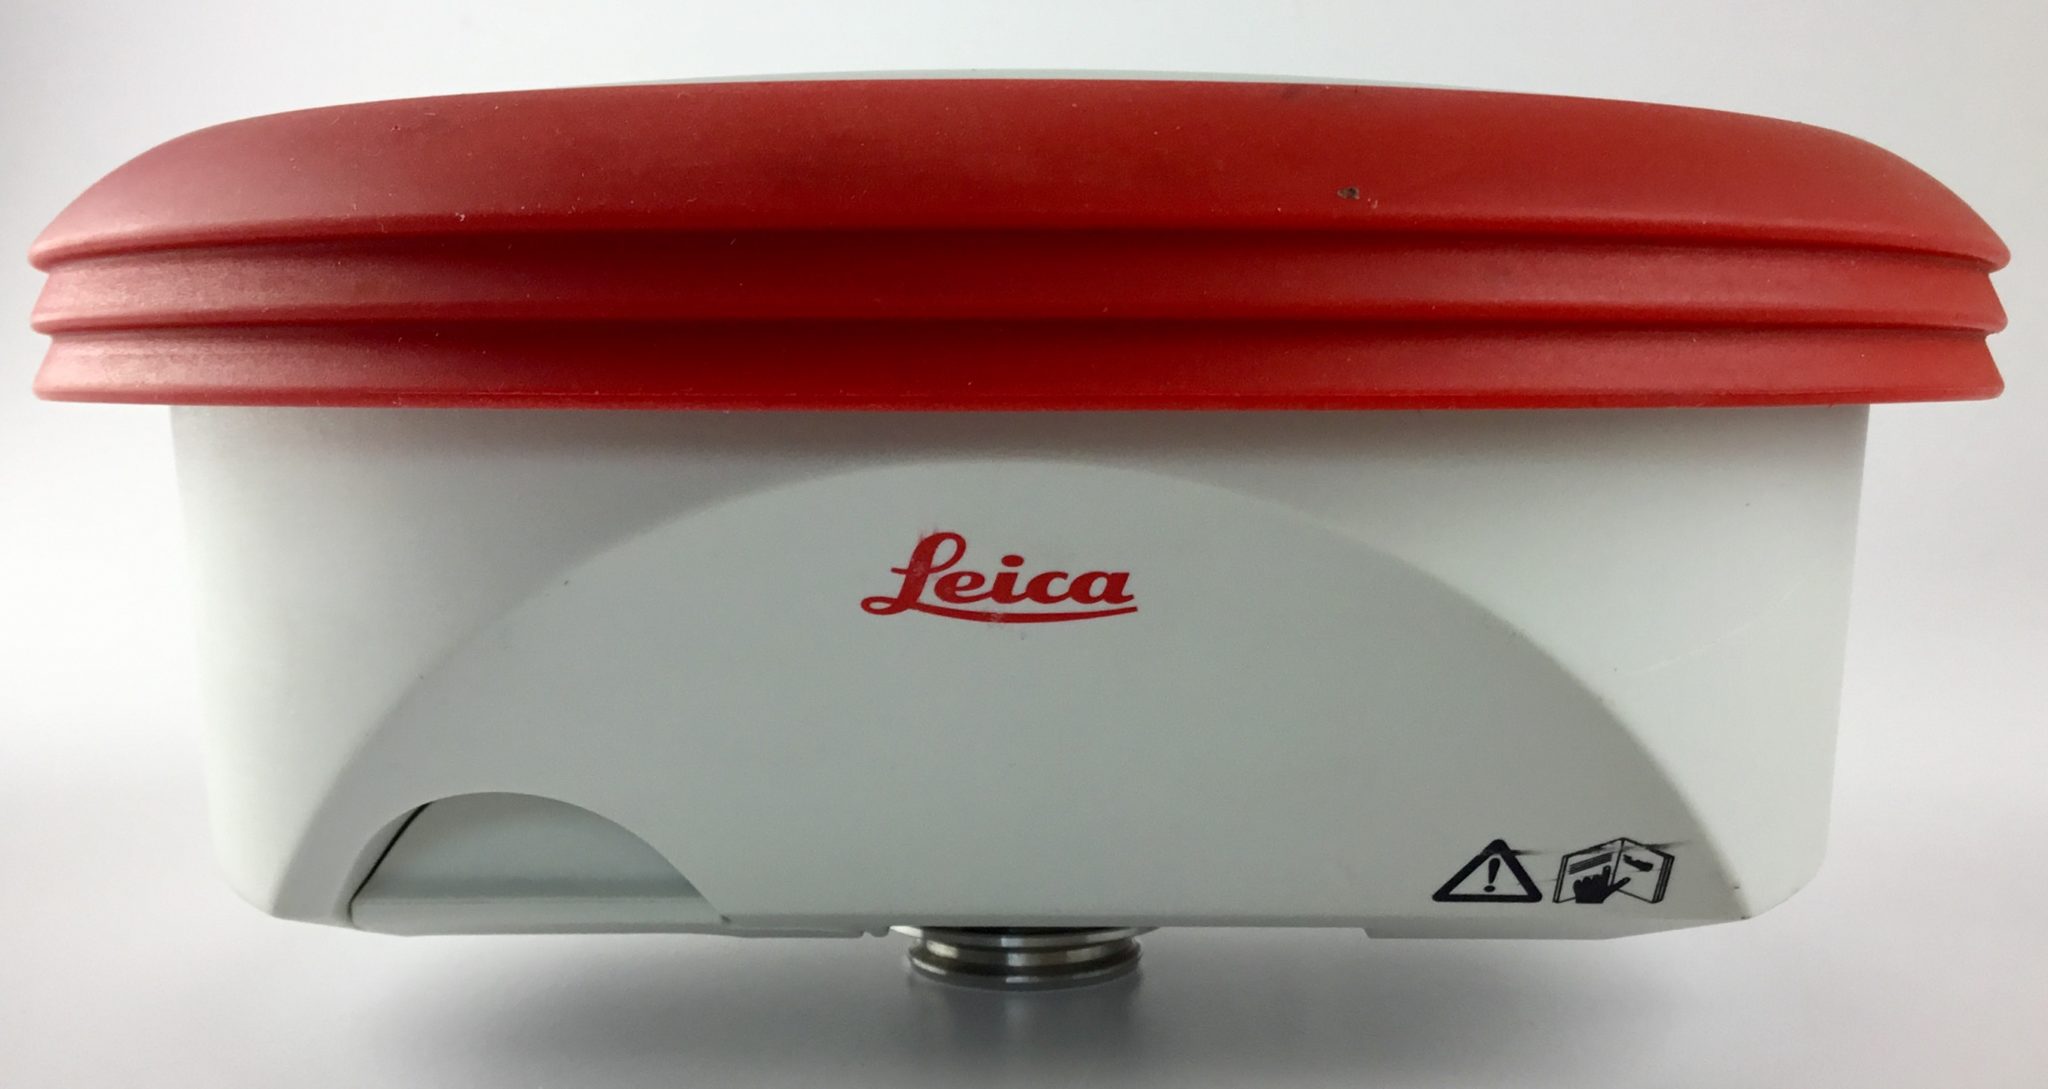 Leica ATX900